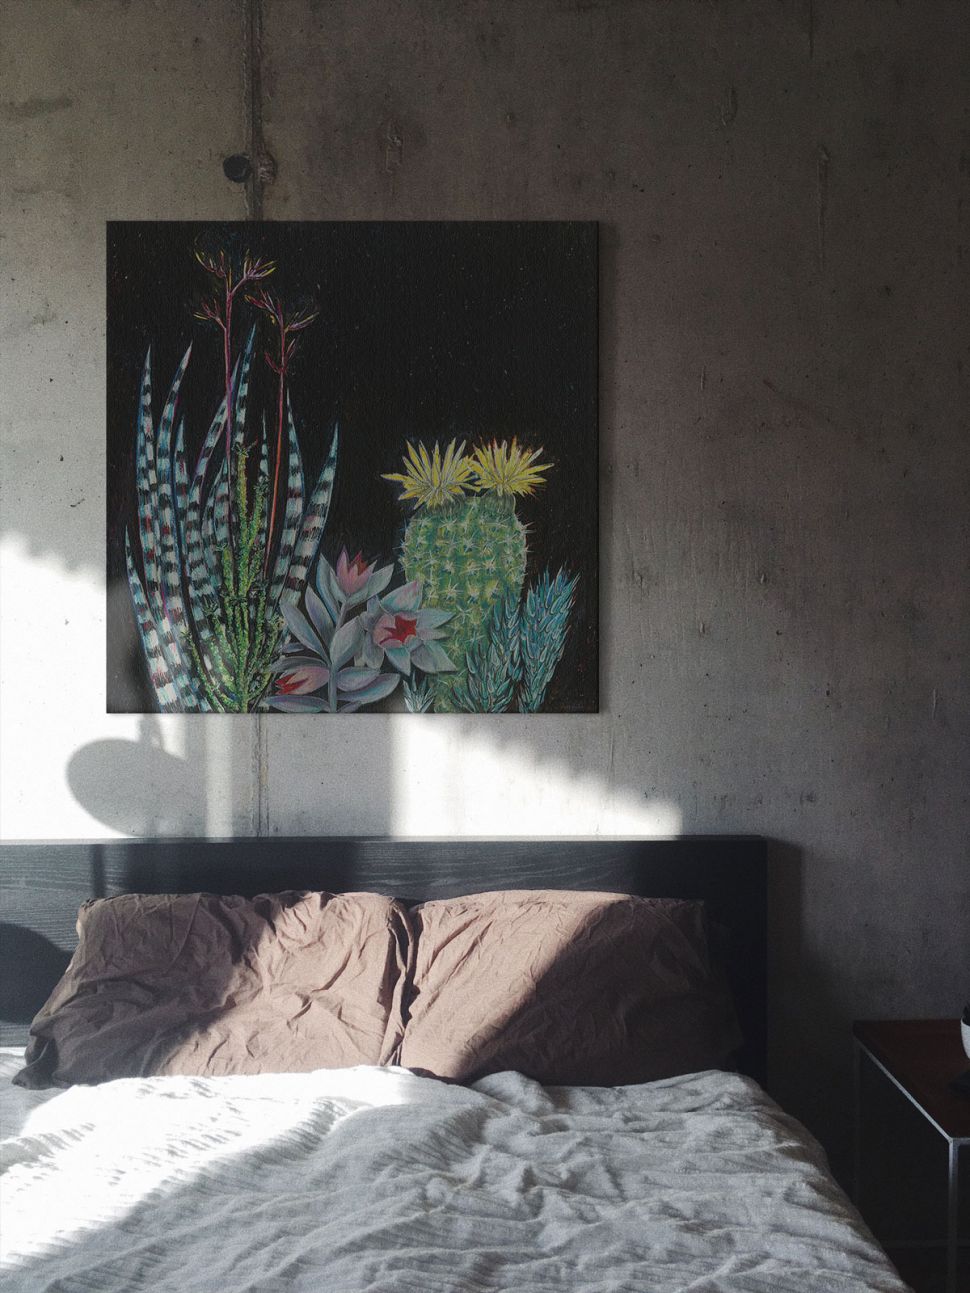 Obraz na płótnie autorki Shyama Ruffell zatytułowany Dark Tropical II umieszczony w sypiali nad łóżkiem